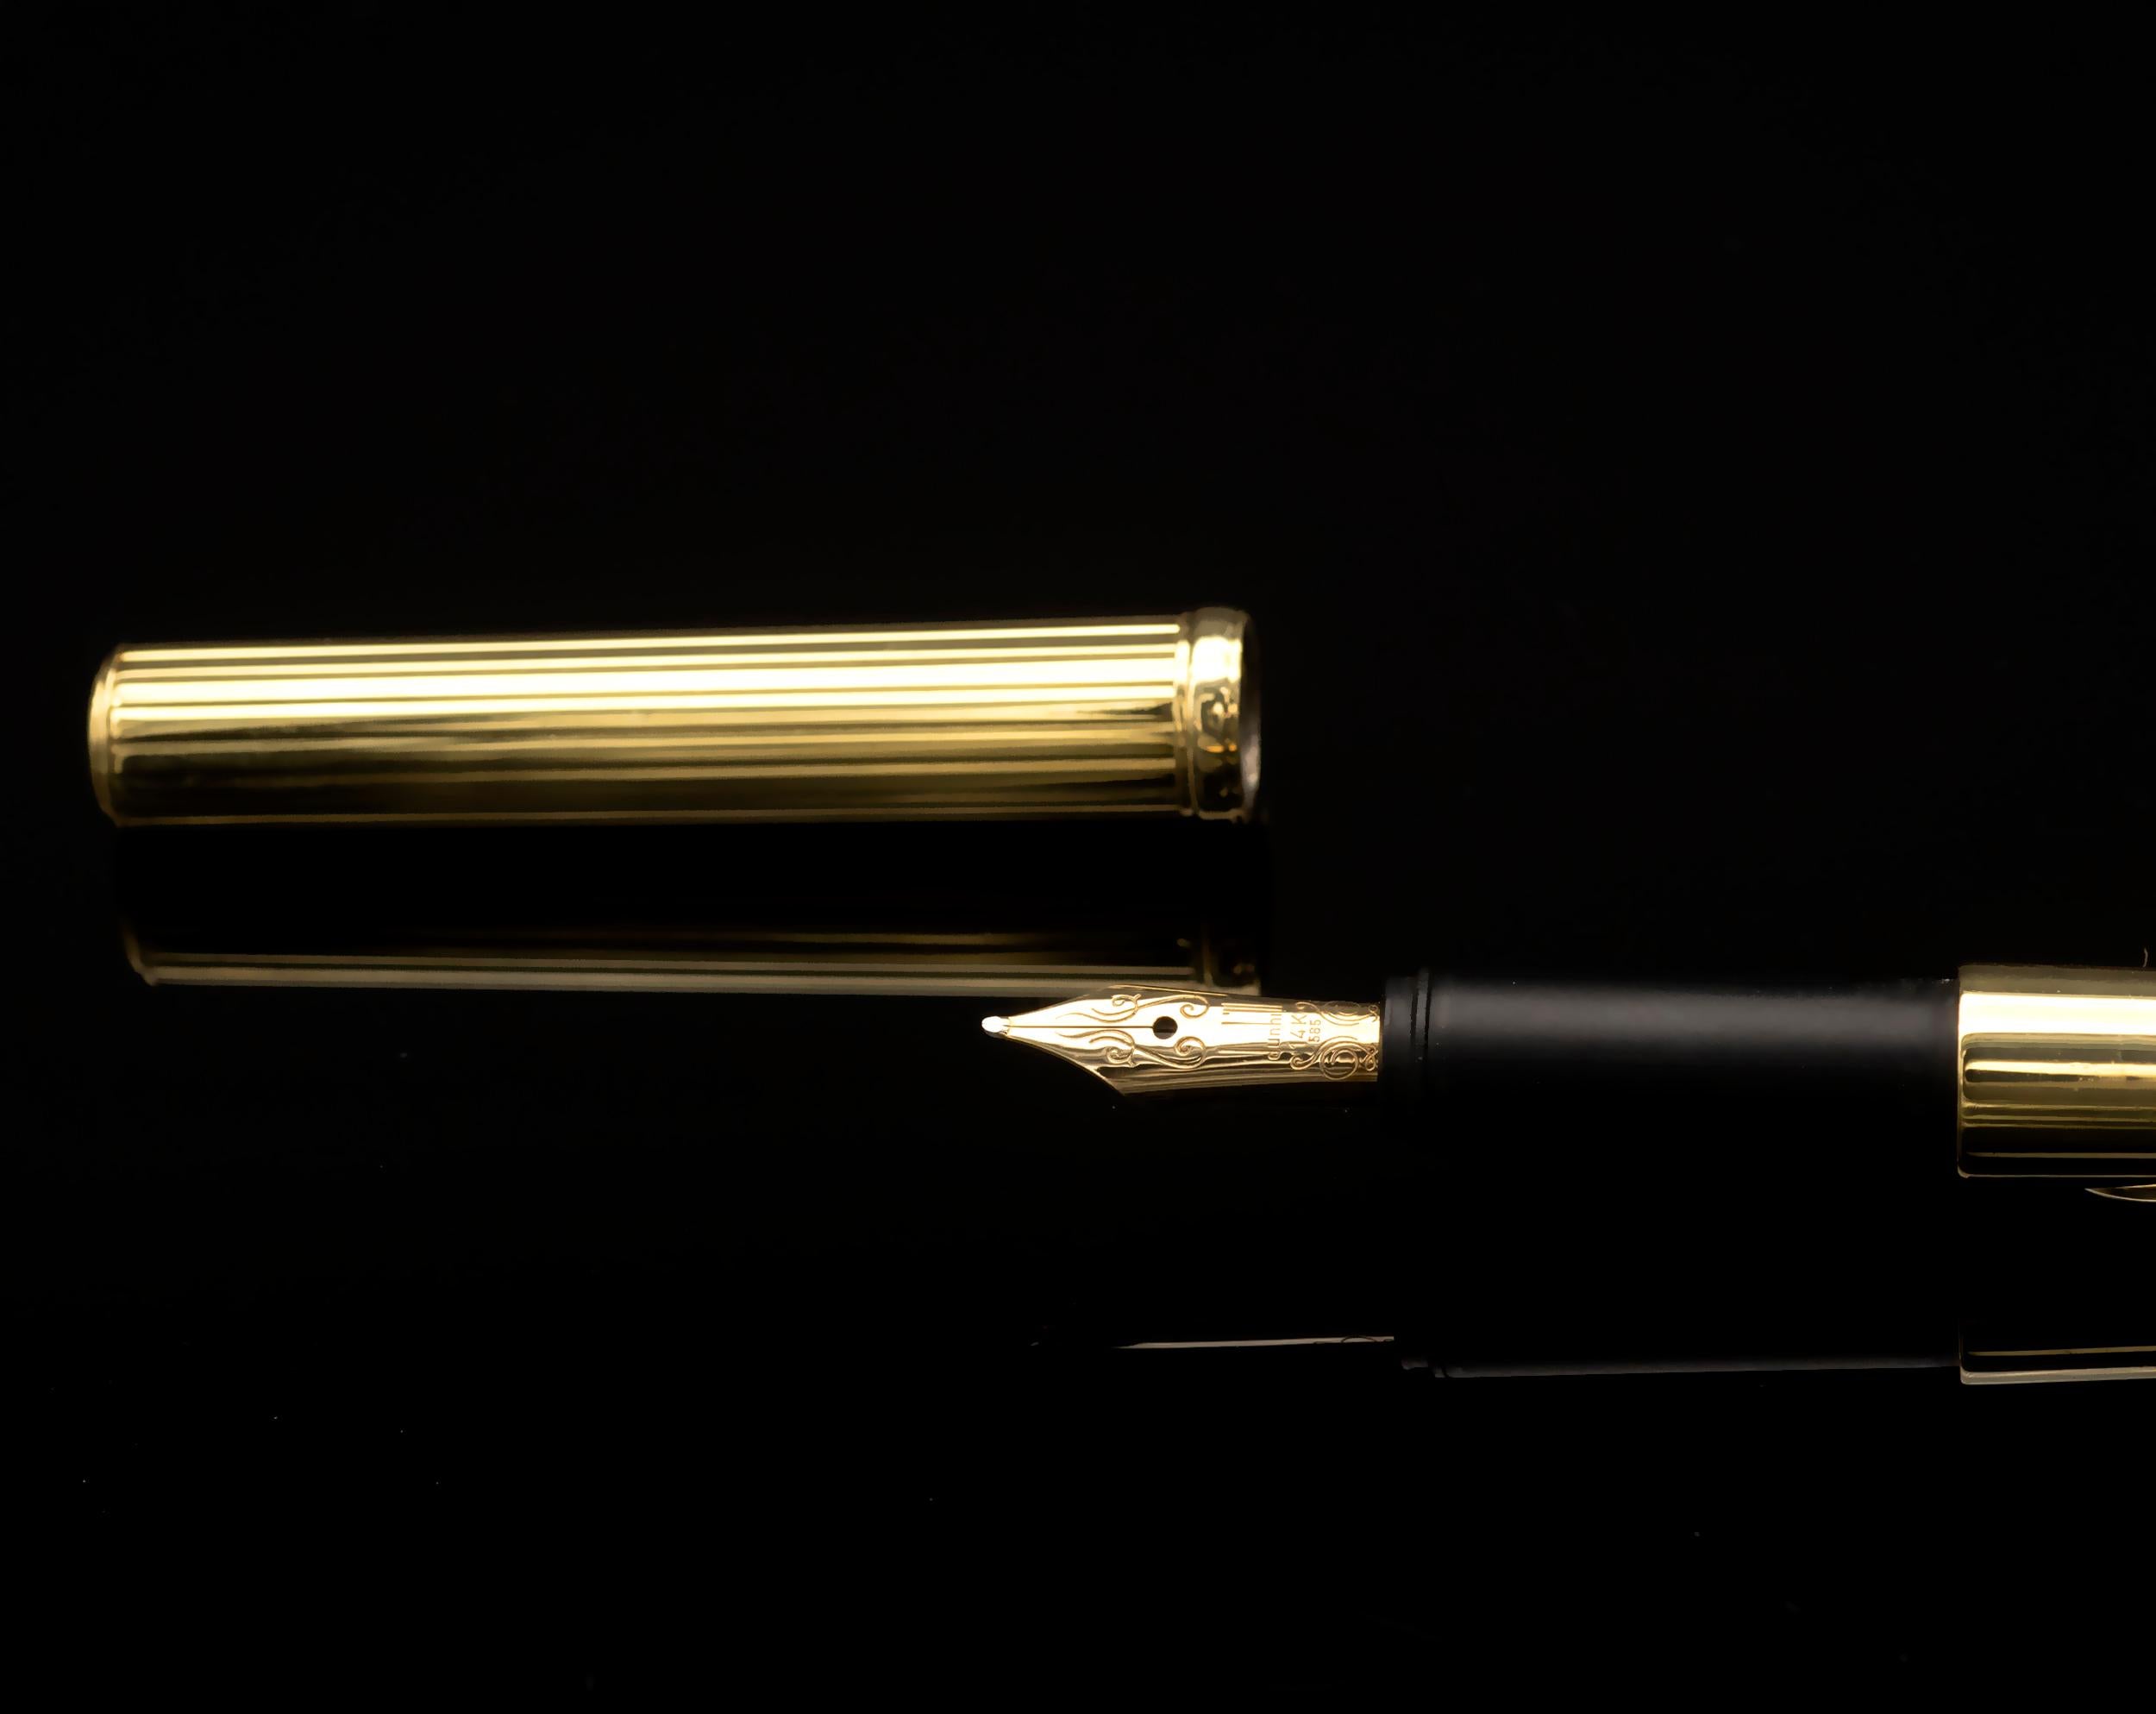 Extraordinaire stylo Dunhill en or jaune massif 18 carats avec en son milieu une ligne de diamants sertis sur or blanc. La plume de Dunhill est en or 14 carats. 
Un design incroyablement raffiné et une superbe qualité de fabrication pour un objet